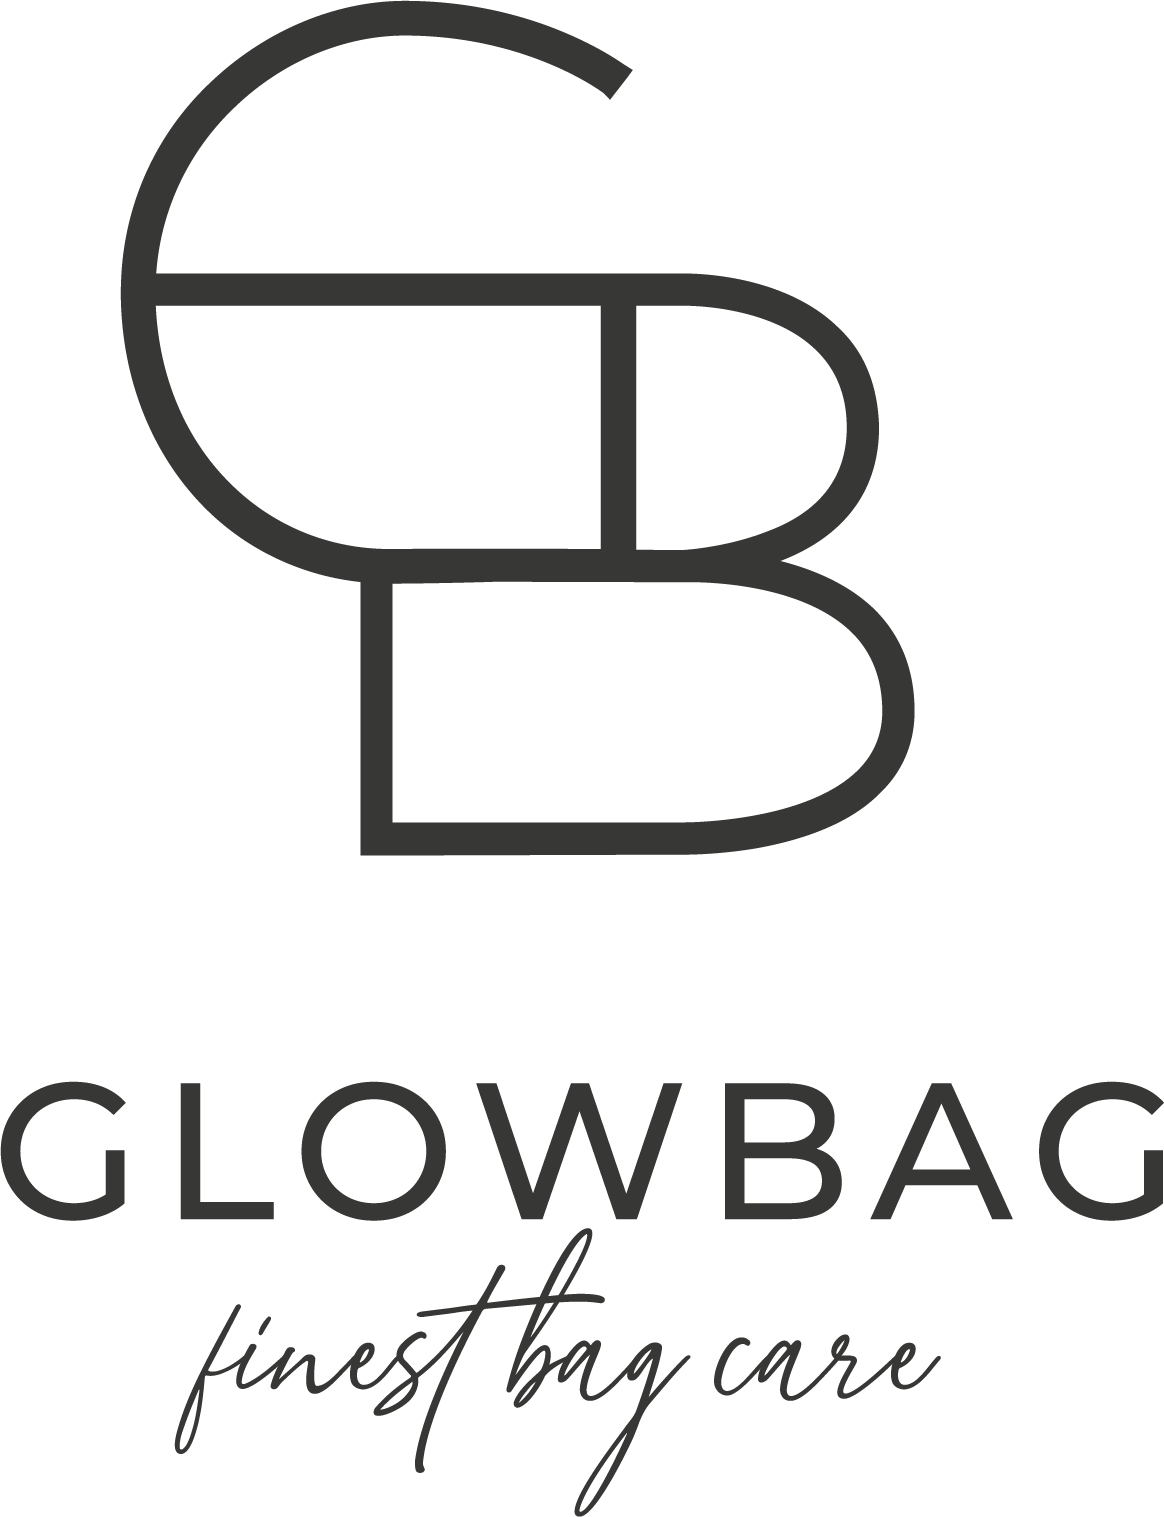 GLOWBAG - finest bag care